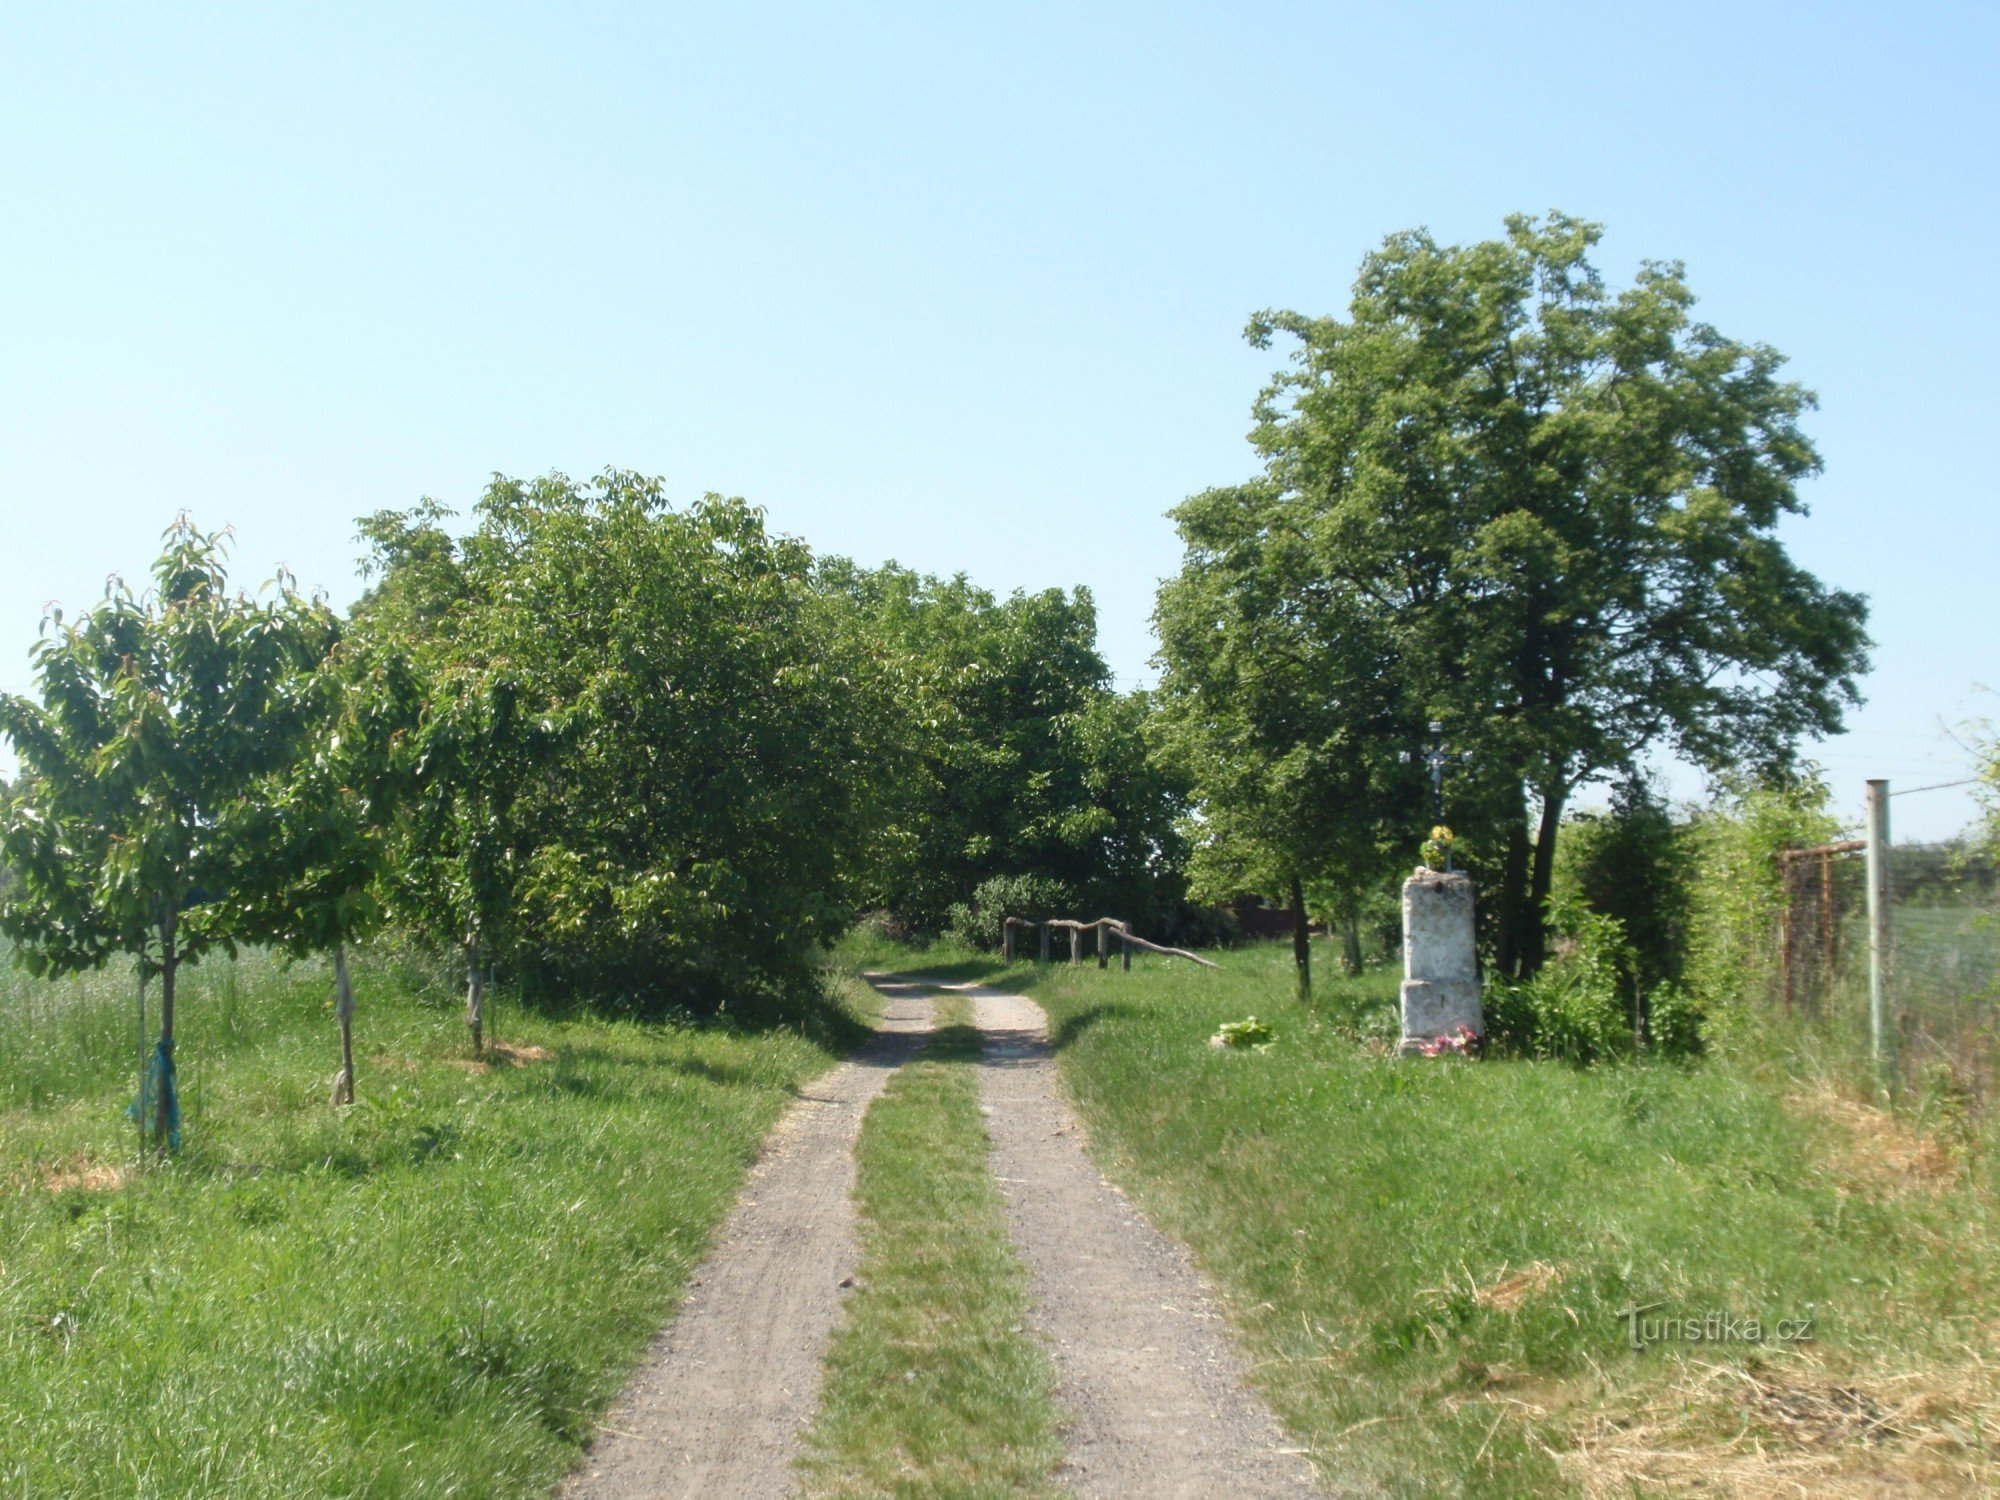 Từ Lednice đến Břeclav - lần này là đi bộ